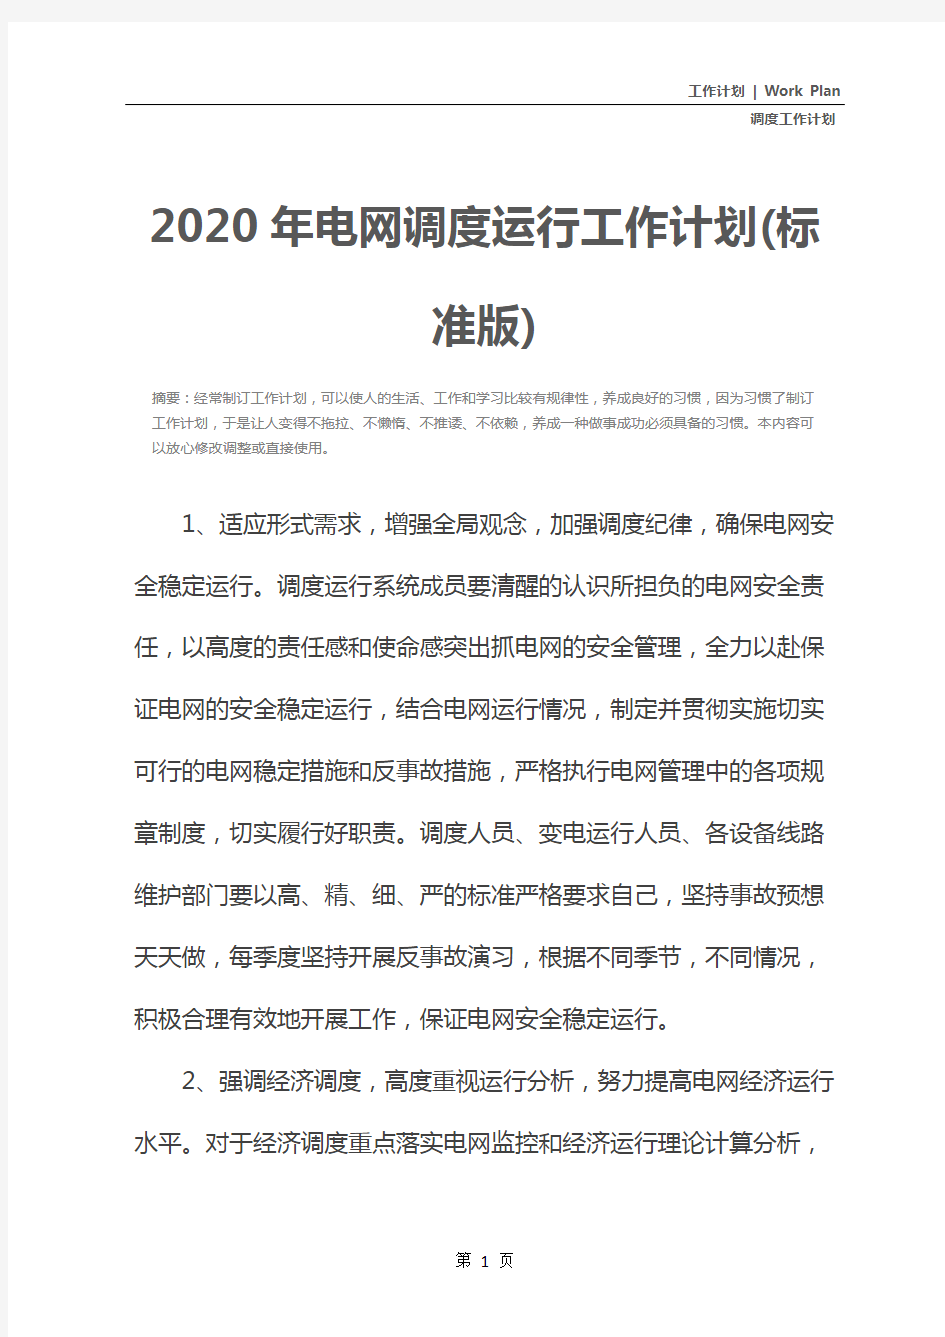 2020年电网调度运行工作计划(标准版)